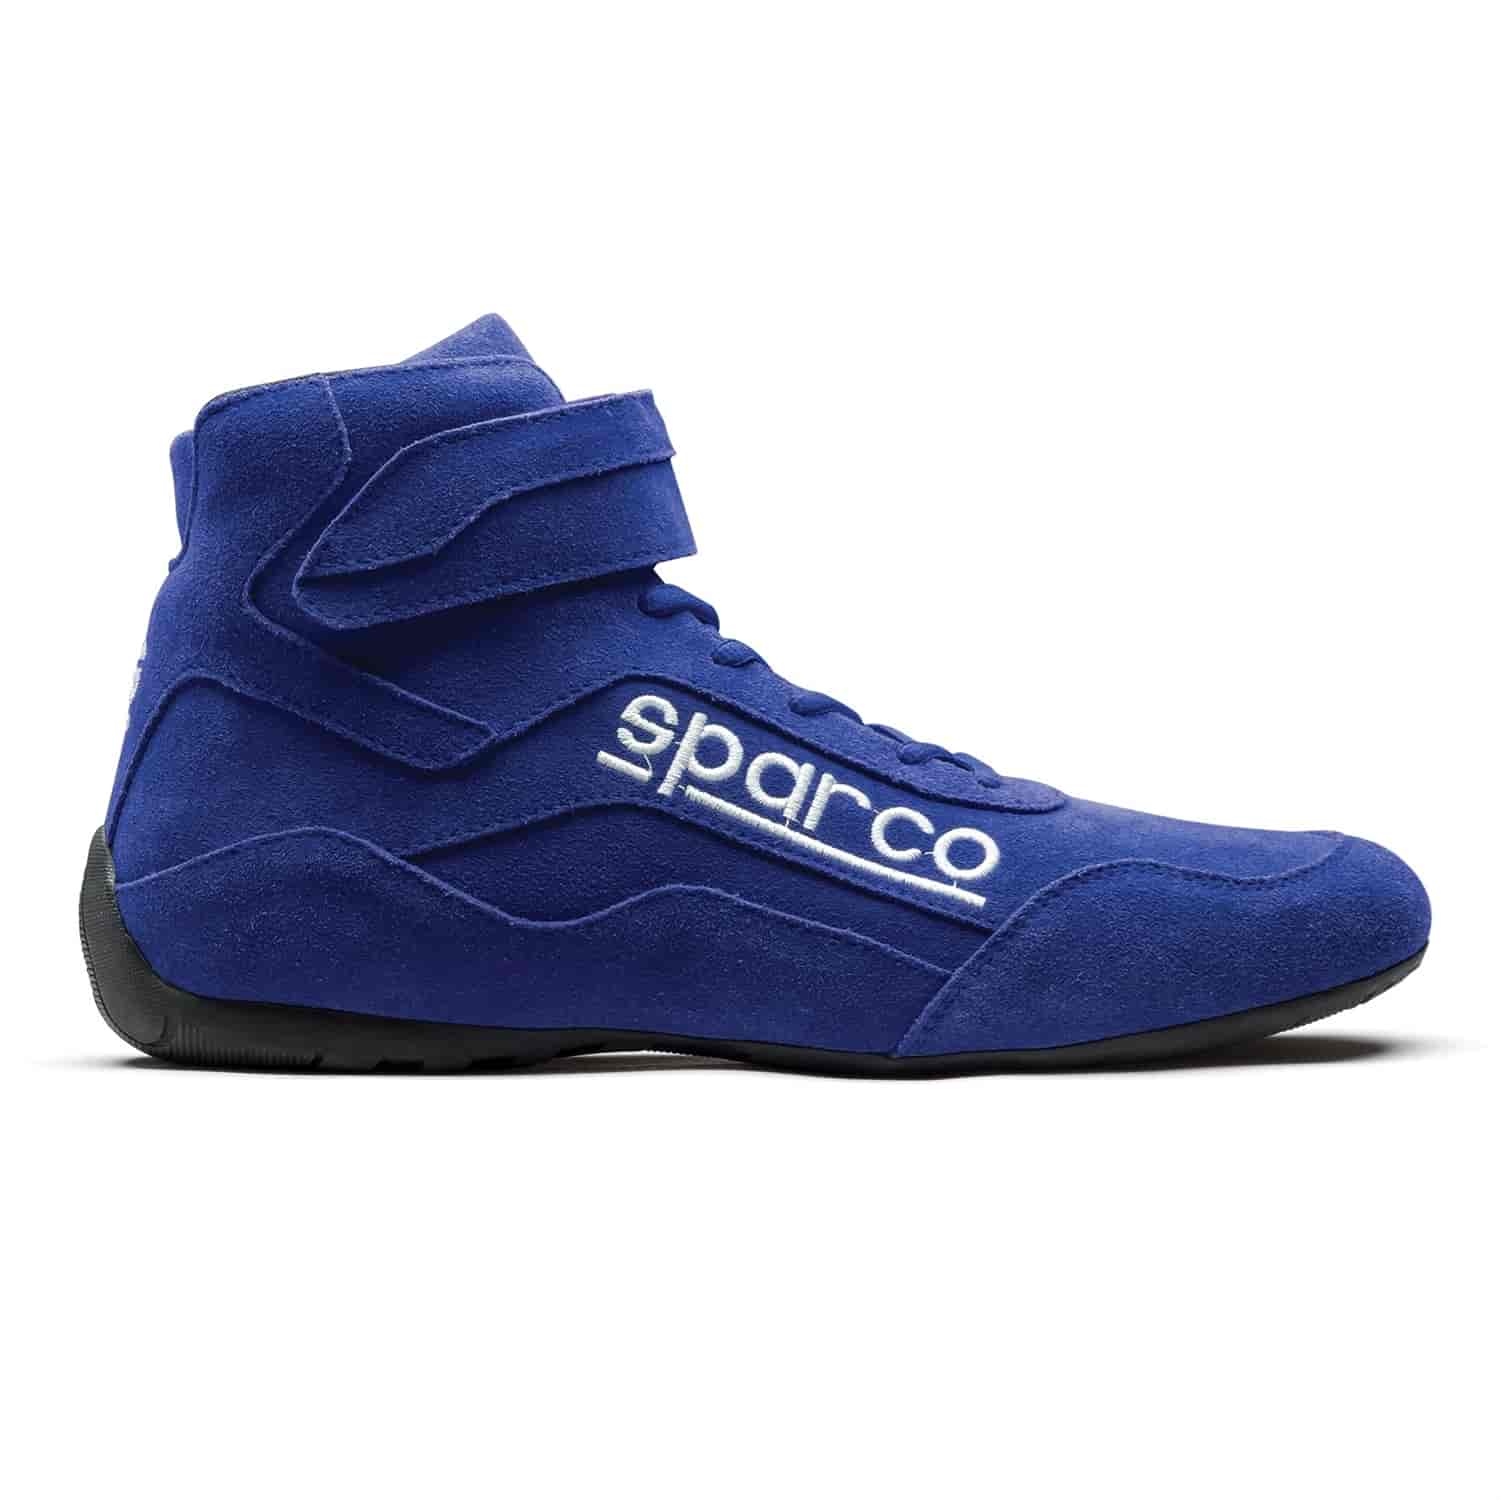 Race 2 Shoe Size 7 - Blue